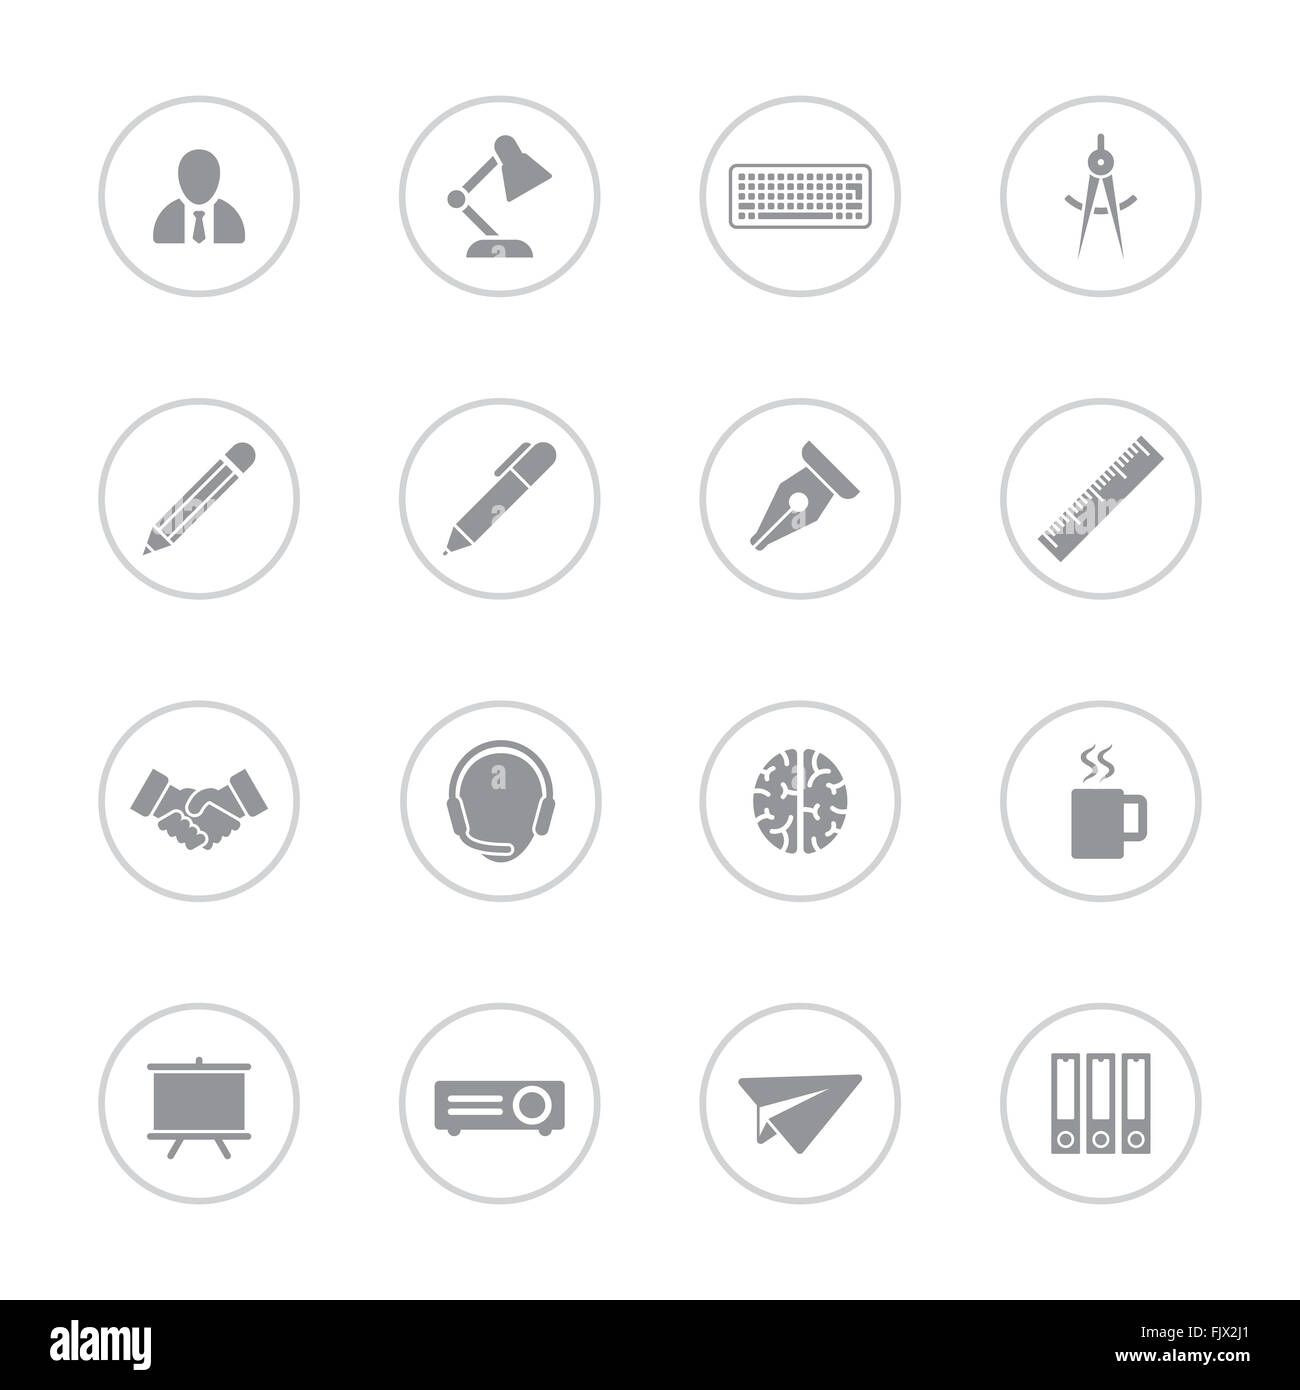 [JPEG] icon set 8 plats gris avec châssis circulaire pour le web design, l'interface utilisateur (IU), l'infographie et de l'application mobile (apps) Banque D'Images